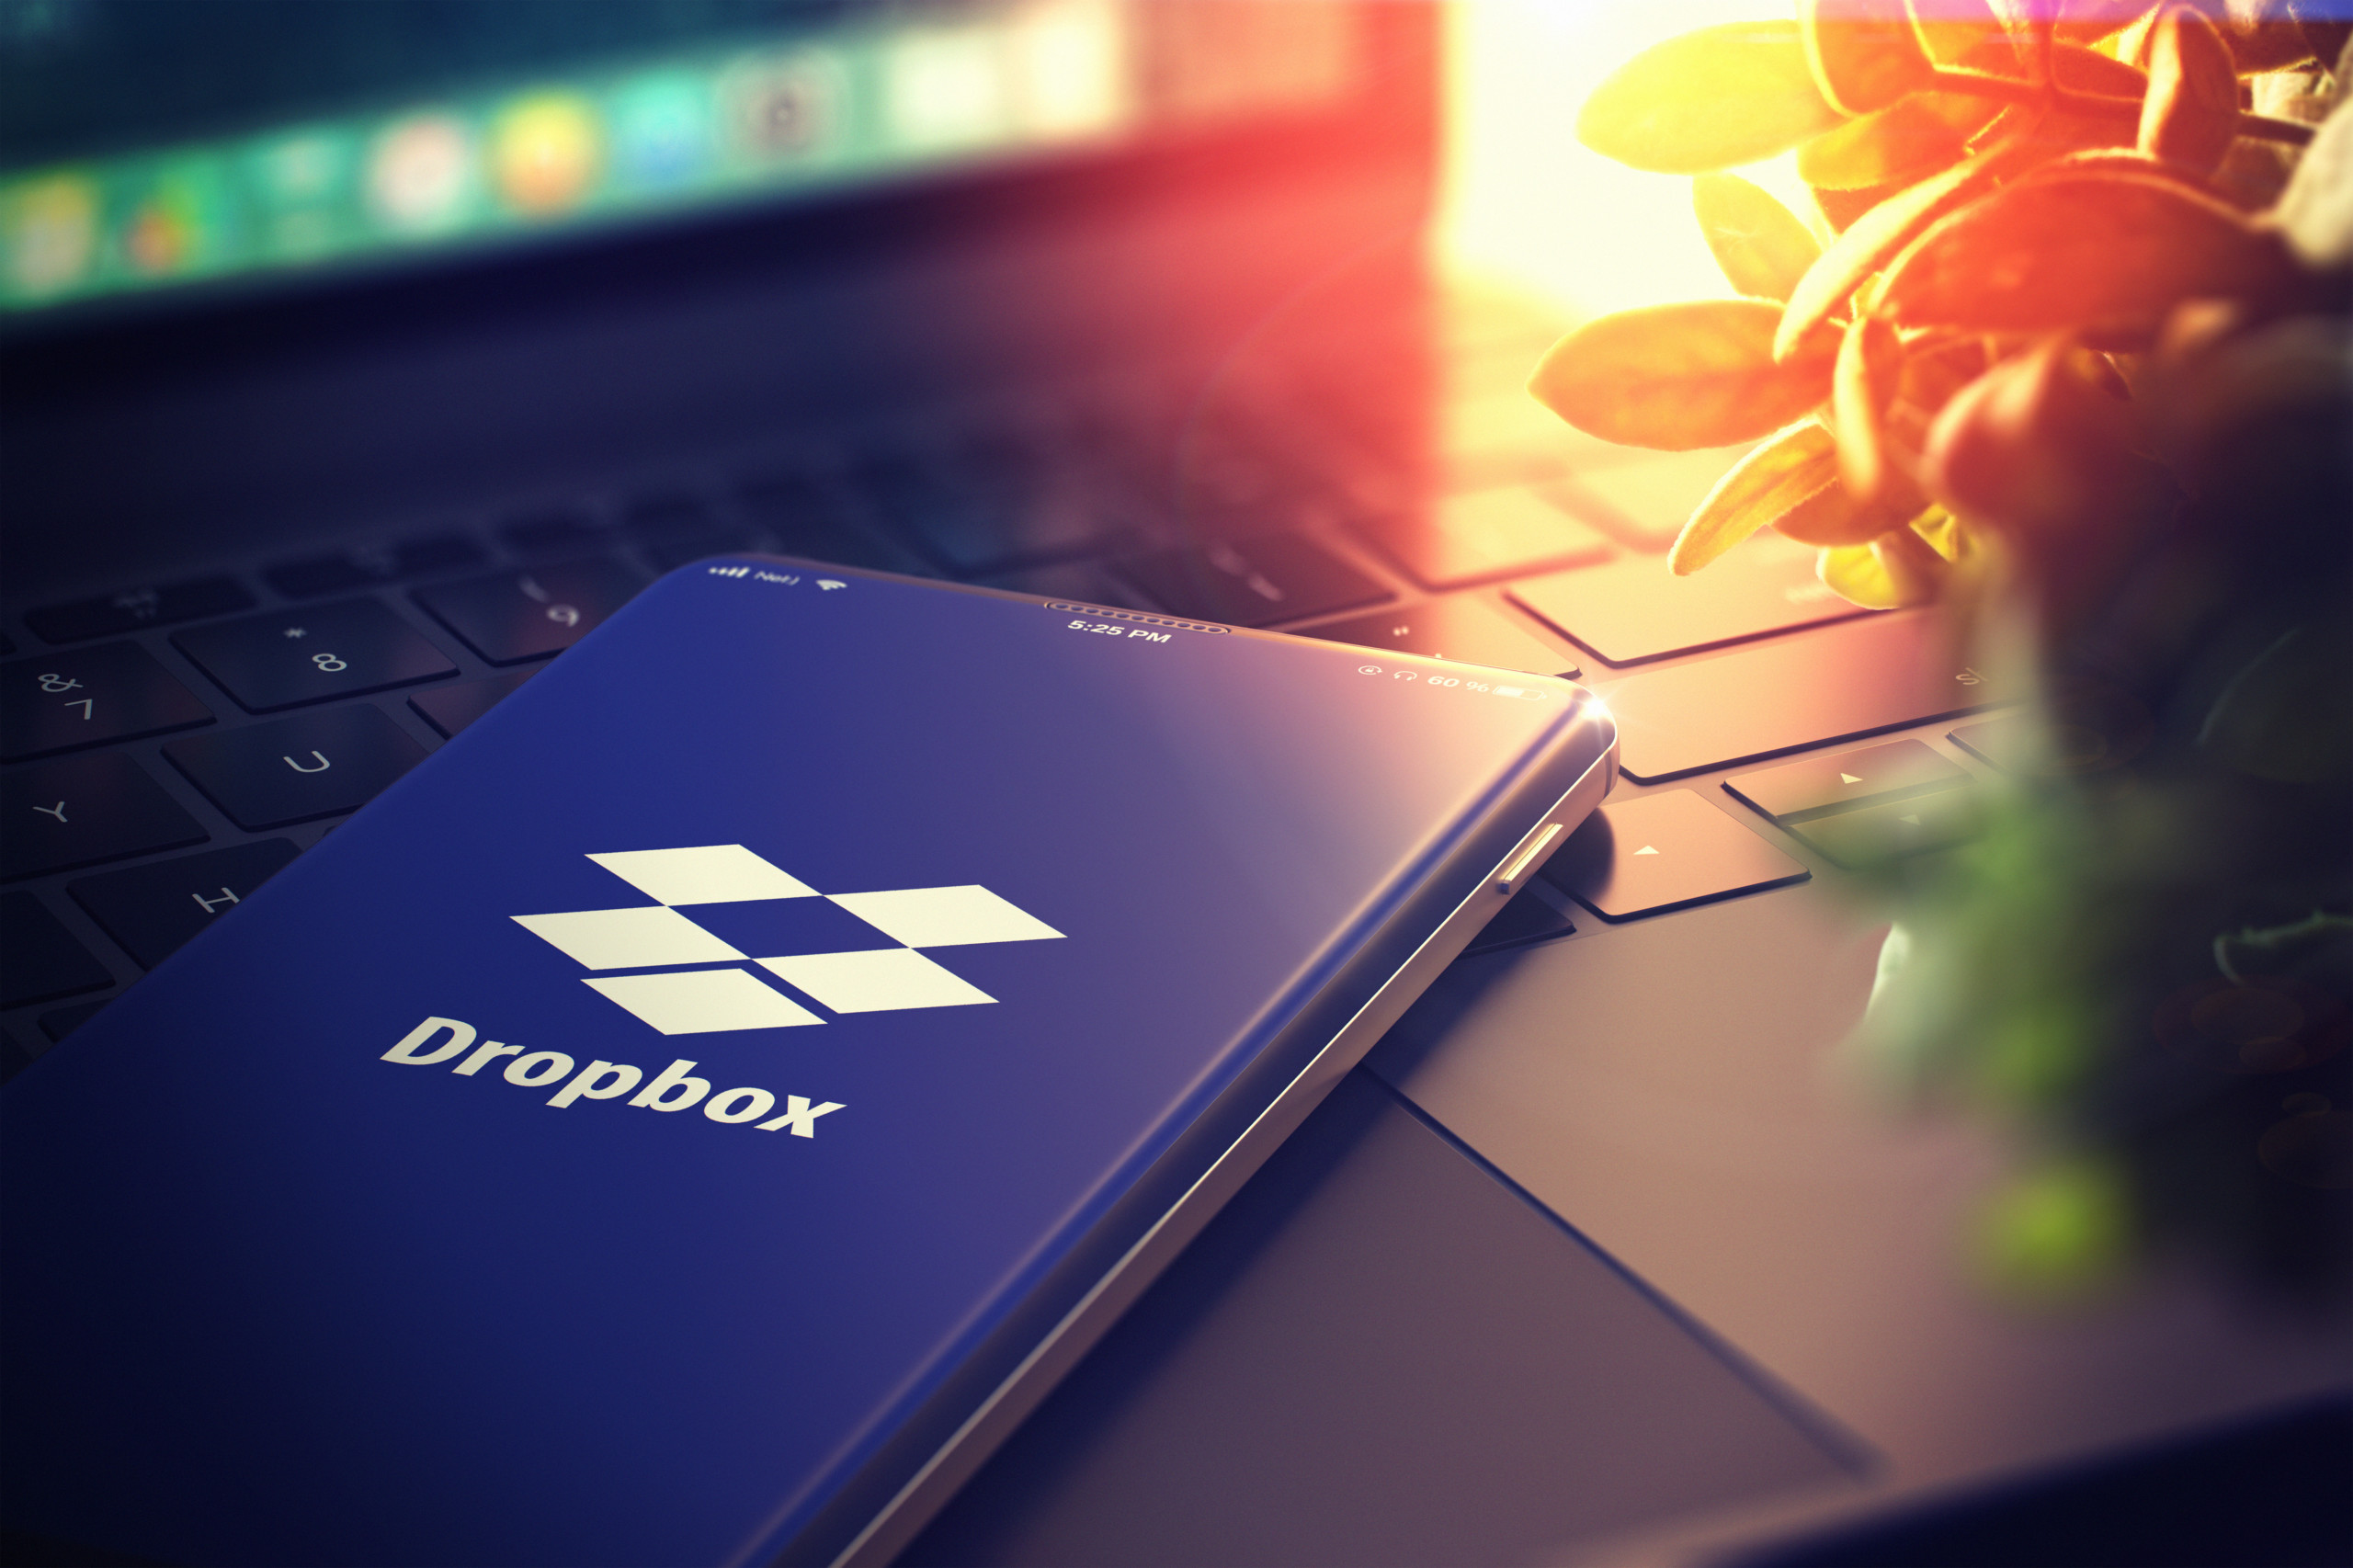 Dropbox: Ein ausgereiftes Geschäft mit starkem Free Cashflow